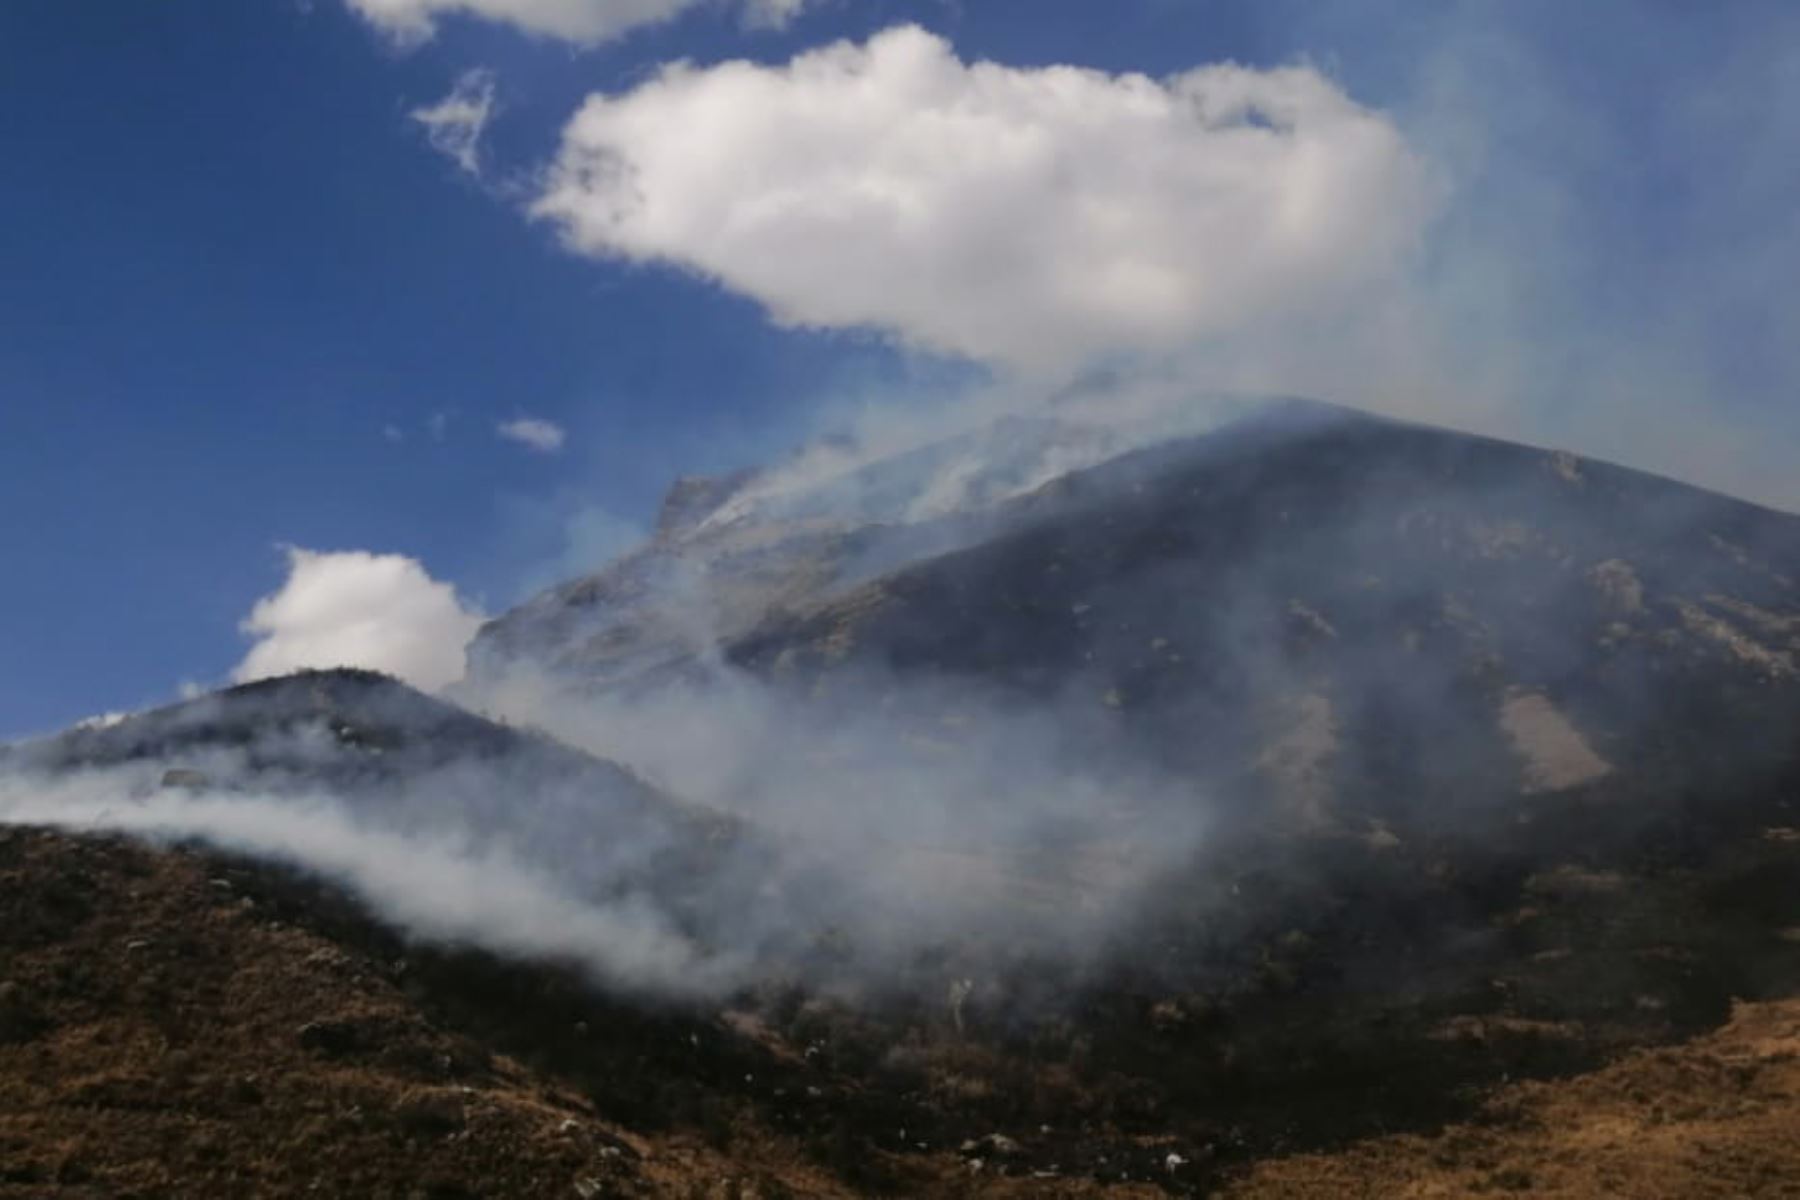 Incendio forestal registrado en el parque nacional Huascarán, región Áncash. Foto: ANDINA/Difusión